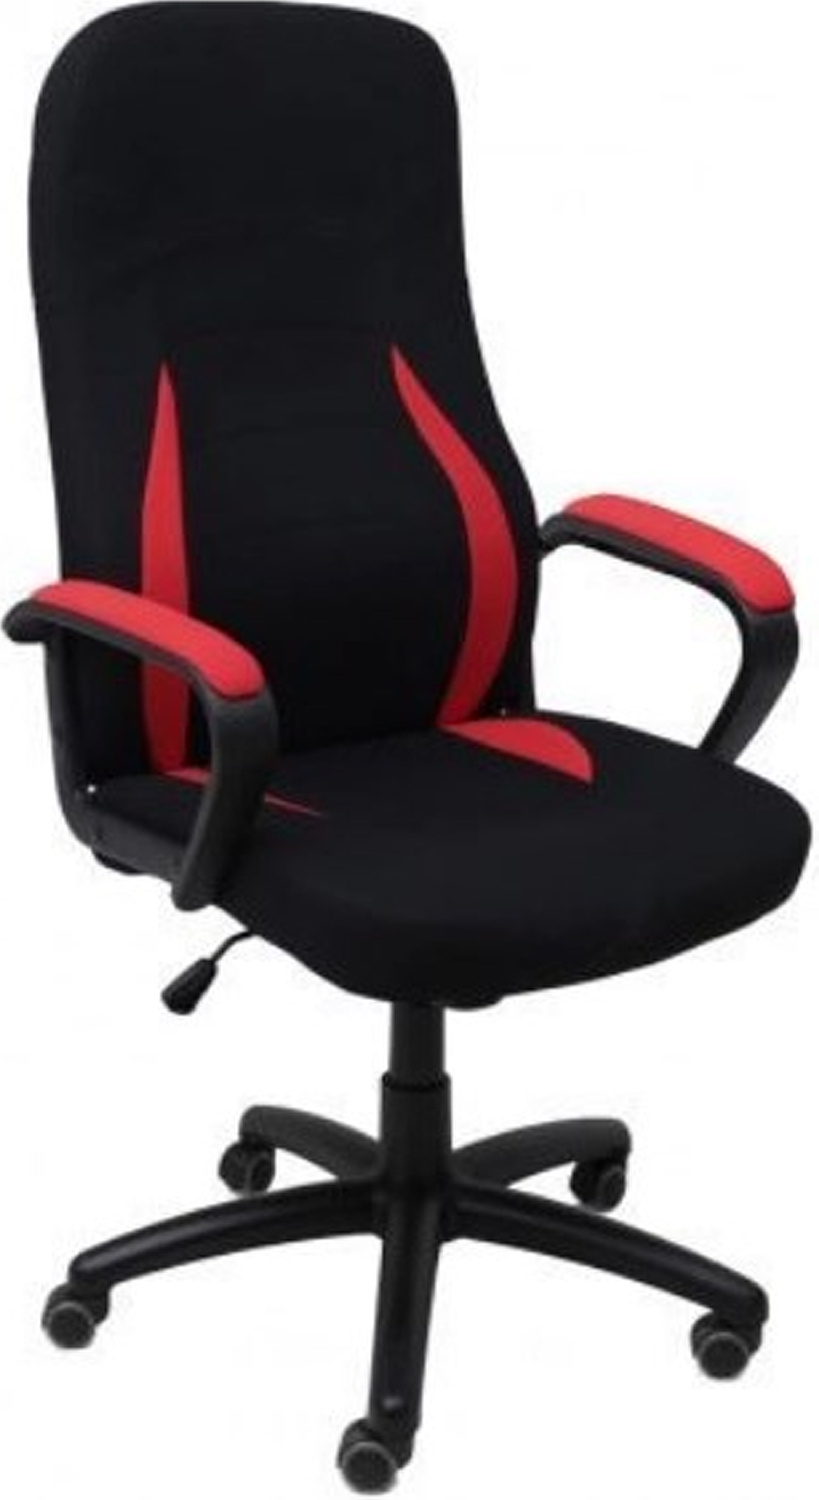 Кресло геймерское AKSHOME Ranger ткань красный/черный (83770)